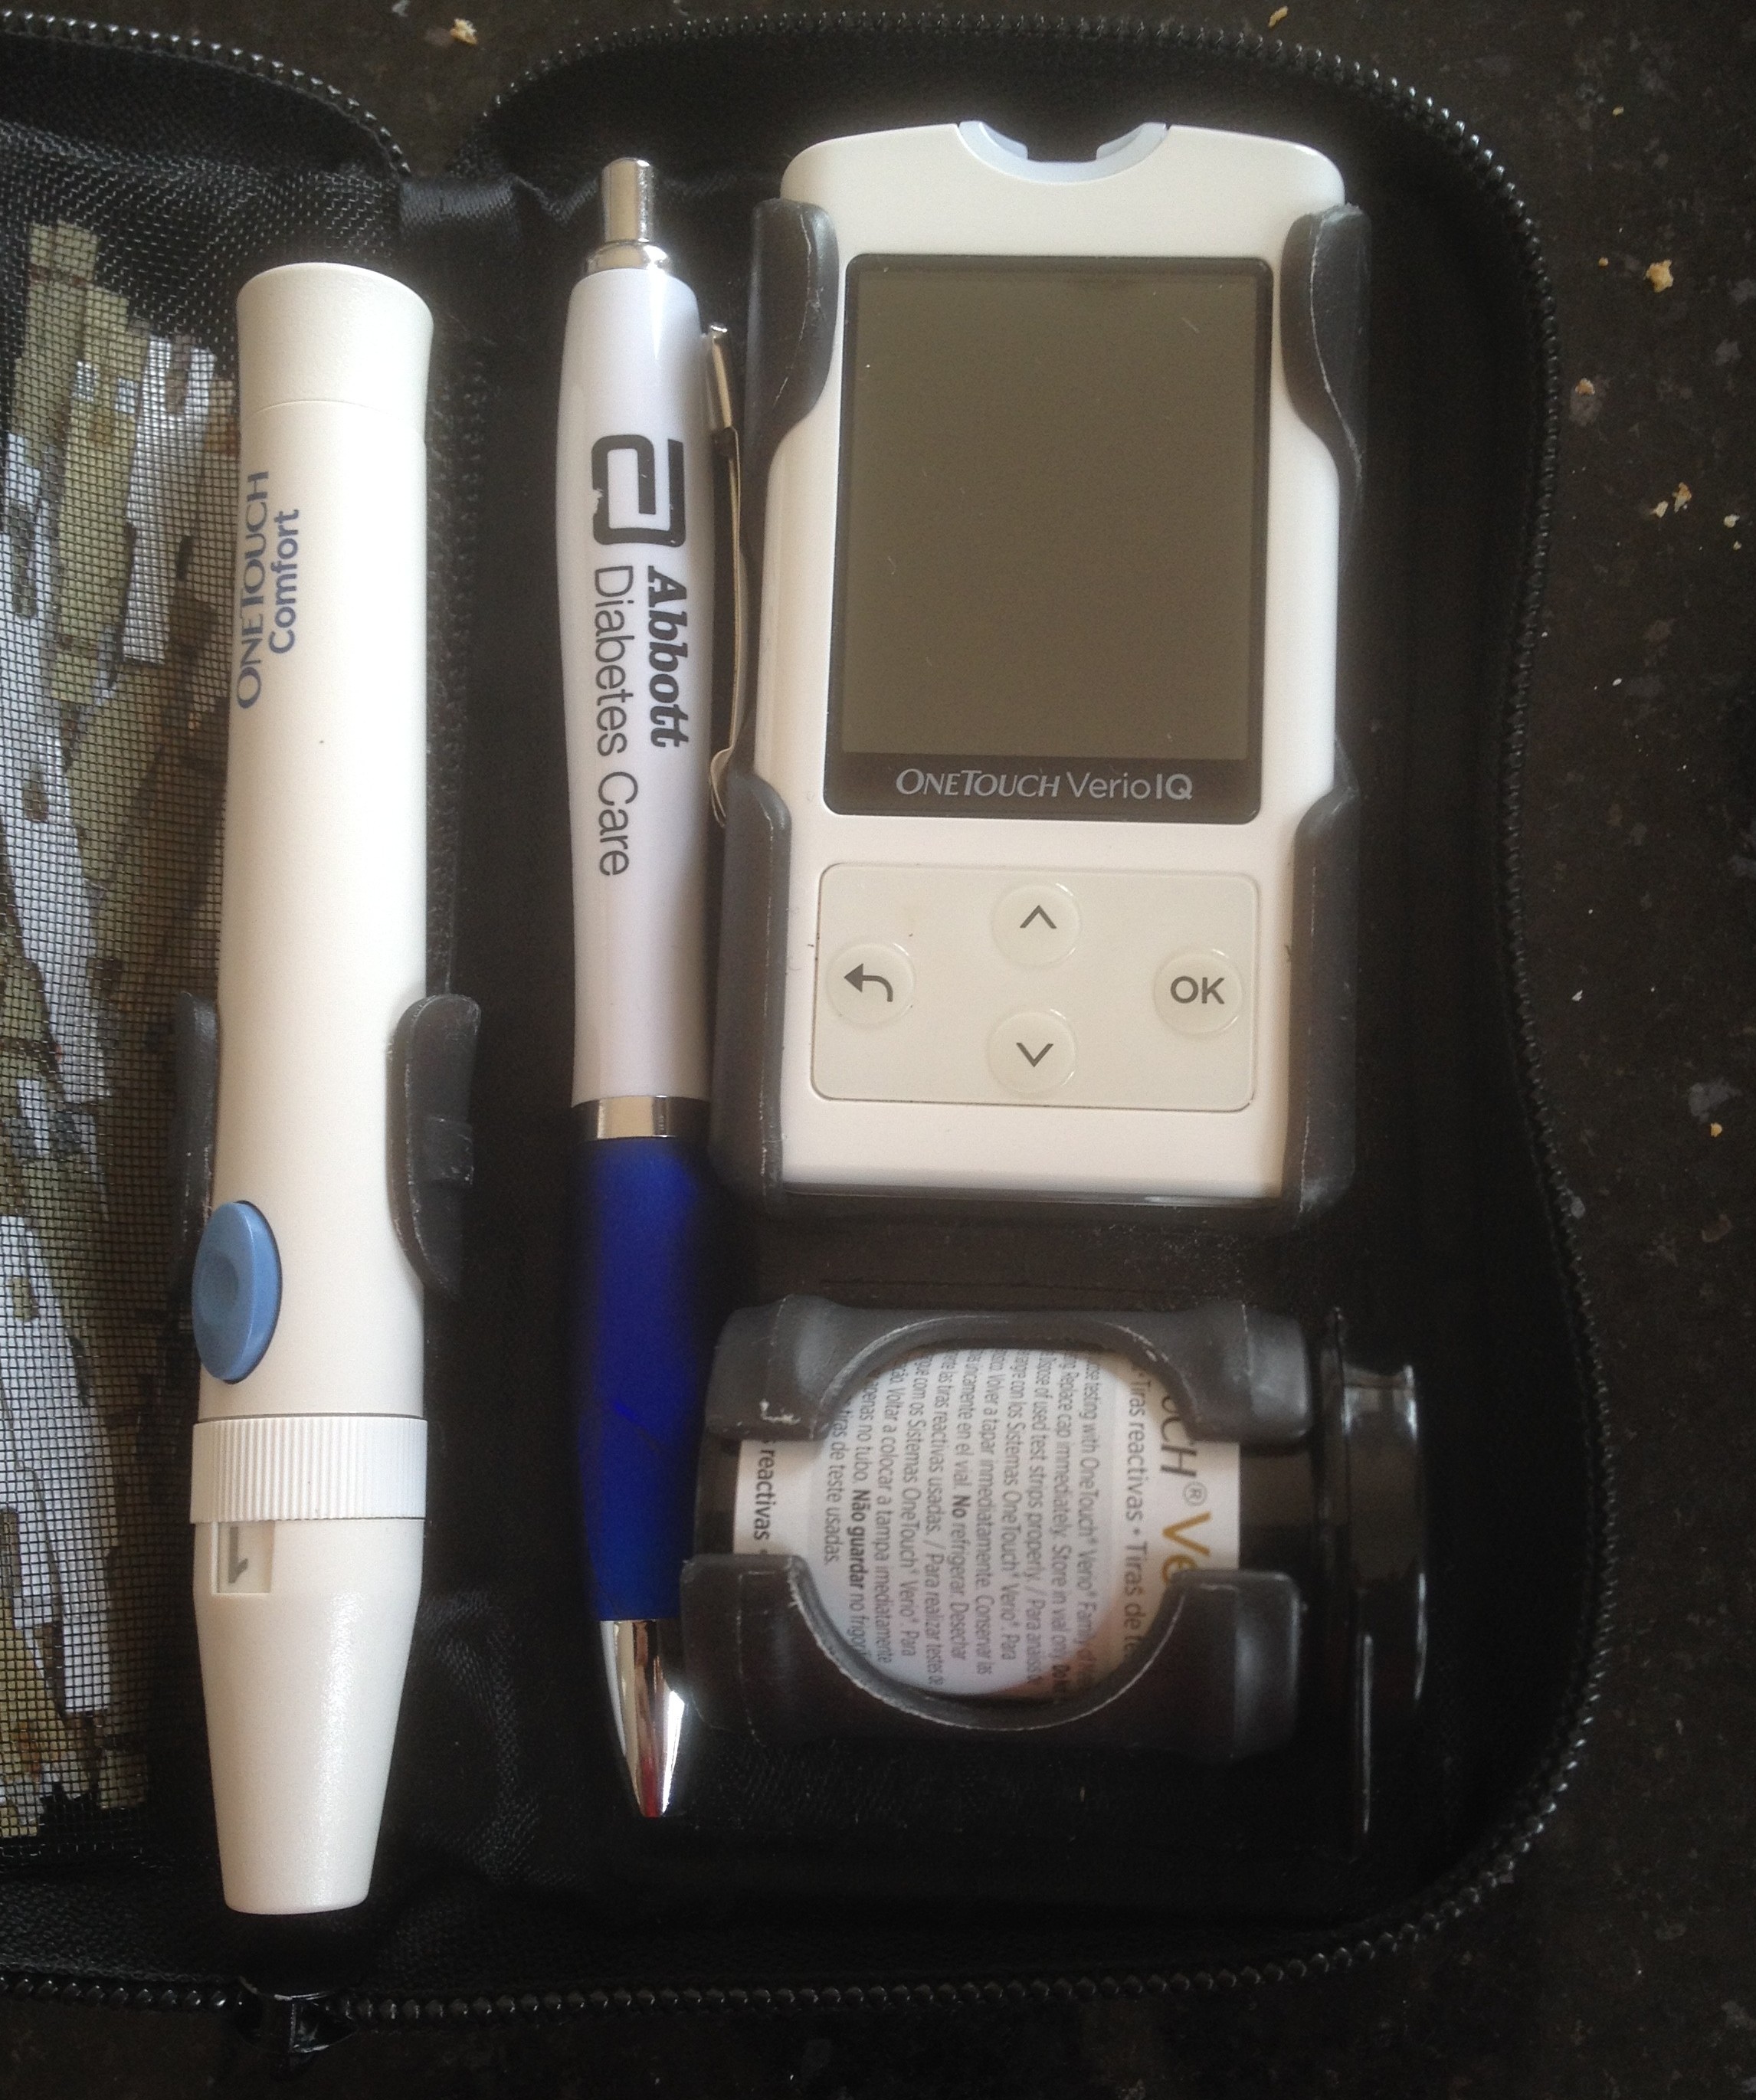 Pen stored inside Blood Glucose meter case. Photo credit Blood Sugar Trampoline